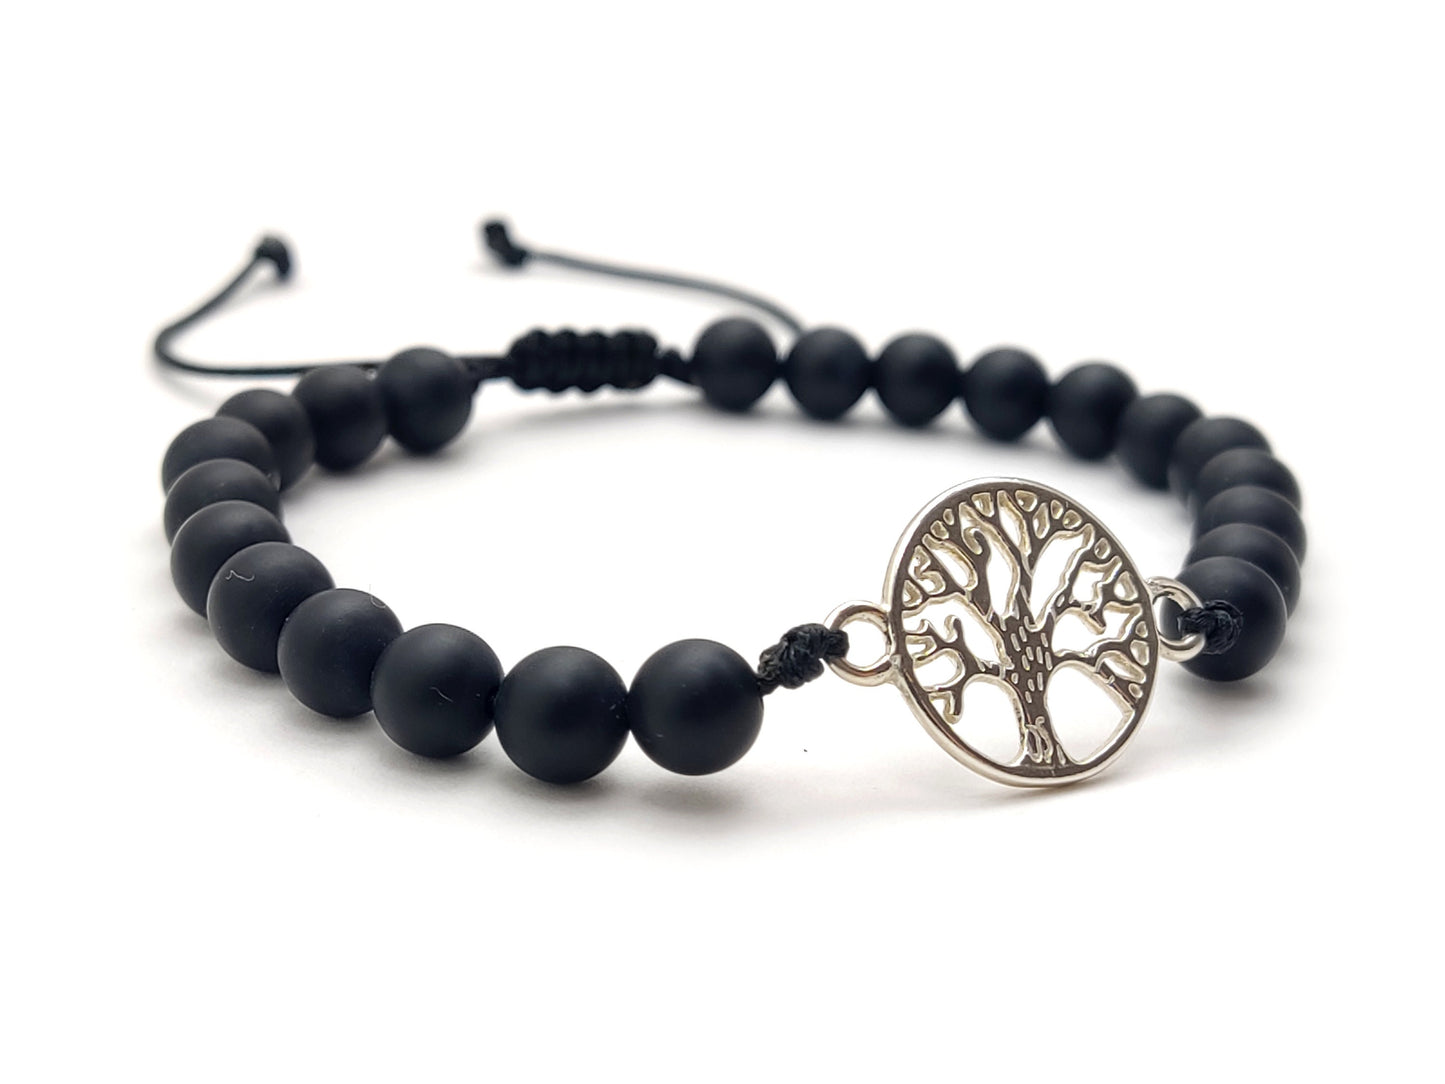 Greek Silver Bracelet, Onyx Jewelry, Tree Of Life Bracelet Made With Matt Onyx Black Stones 6mm, Griechischer Silber Armband, Bijoux Grece